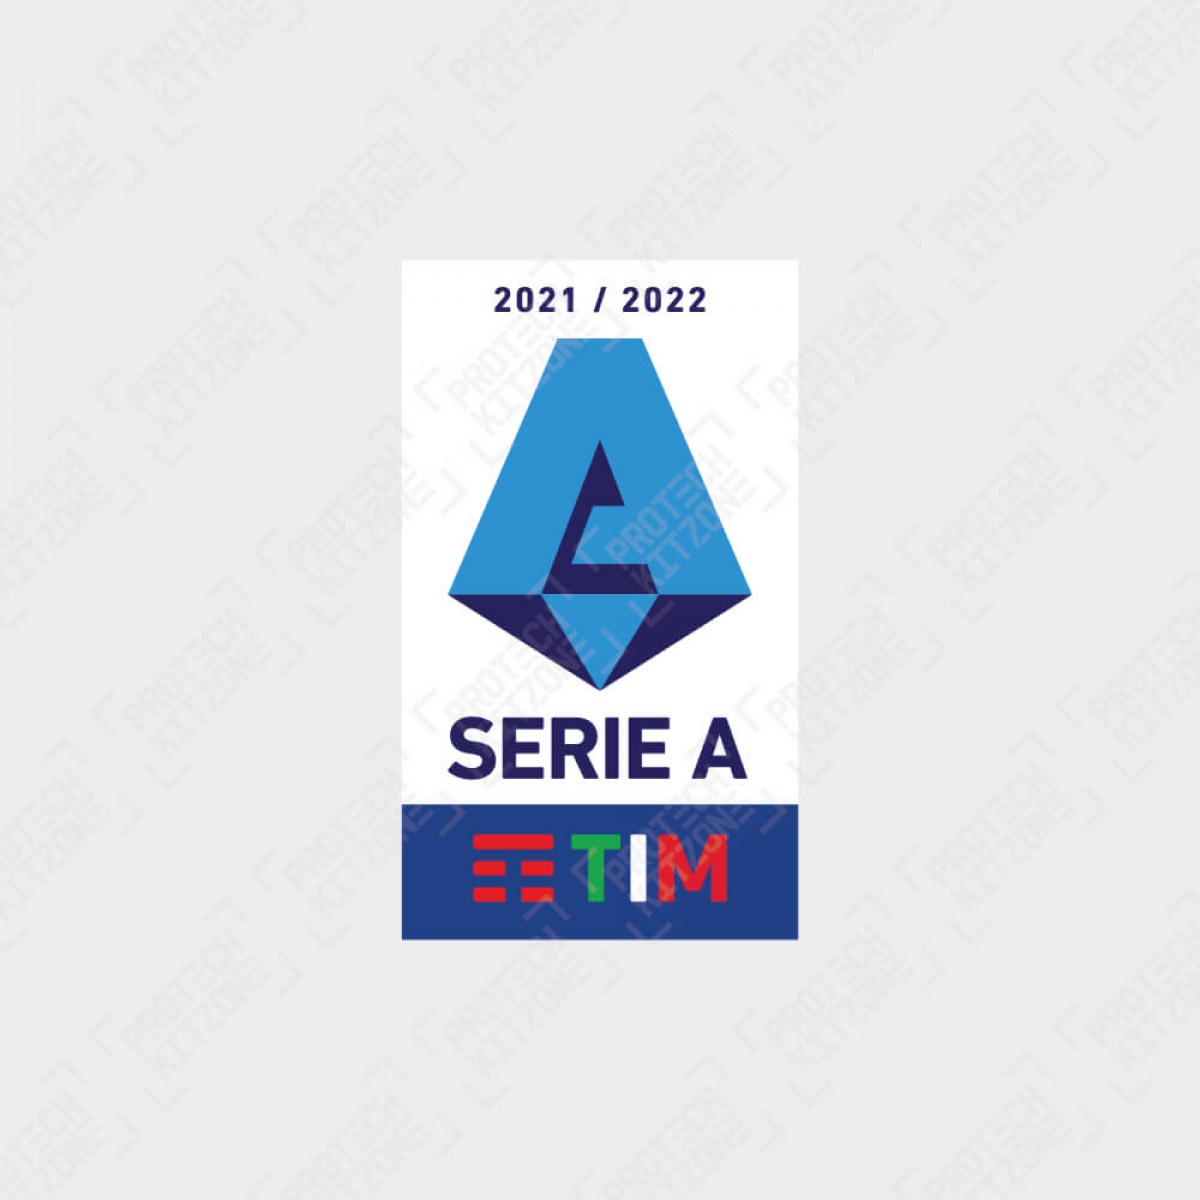 Serie a 2021/22